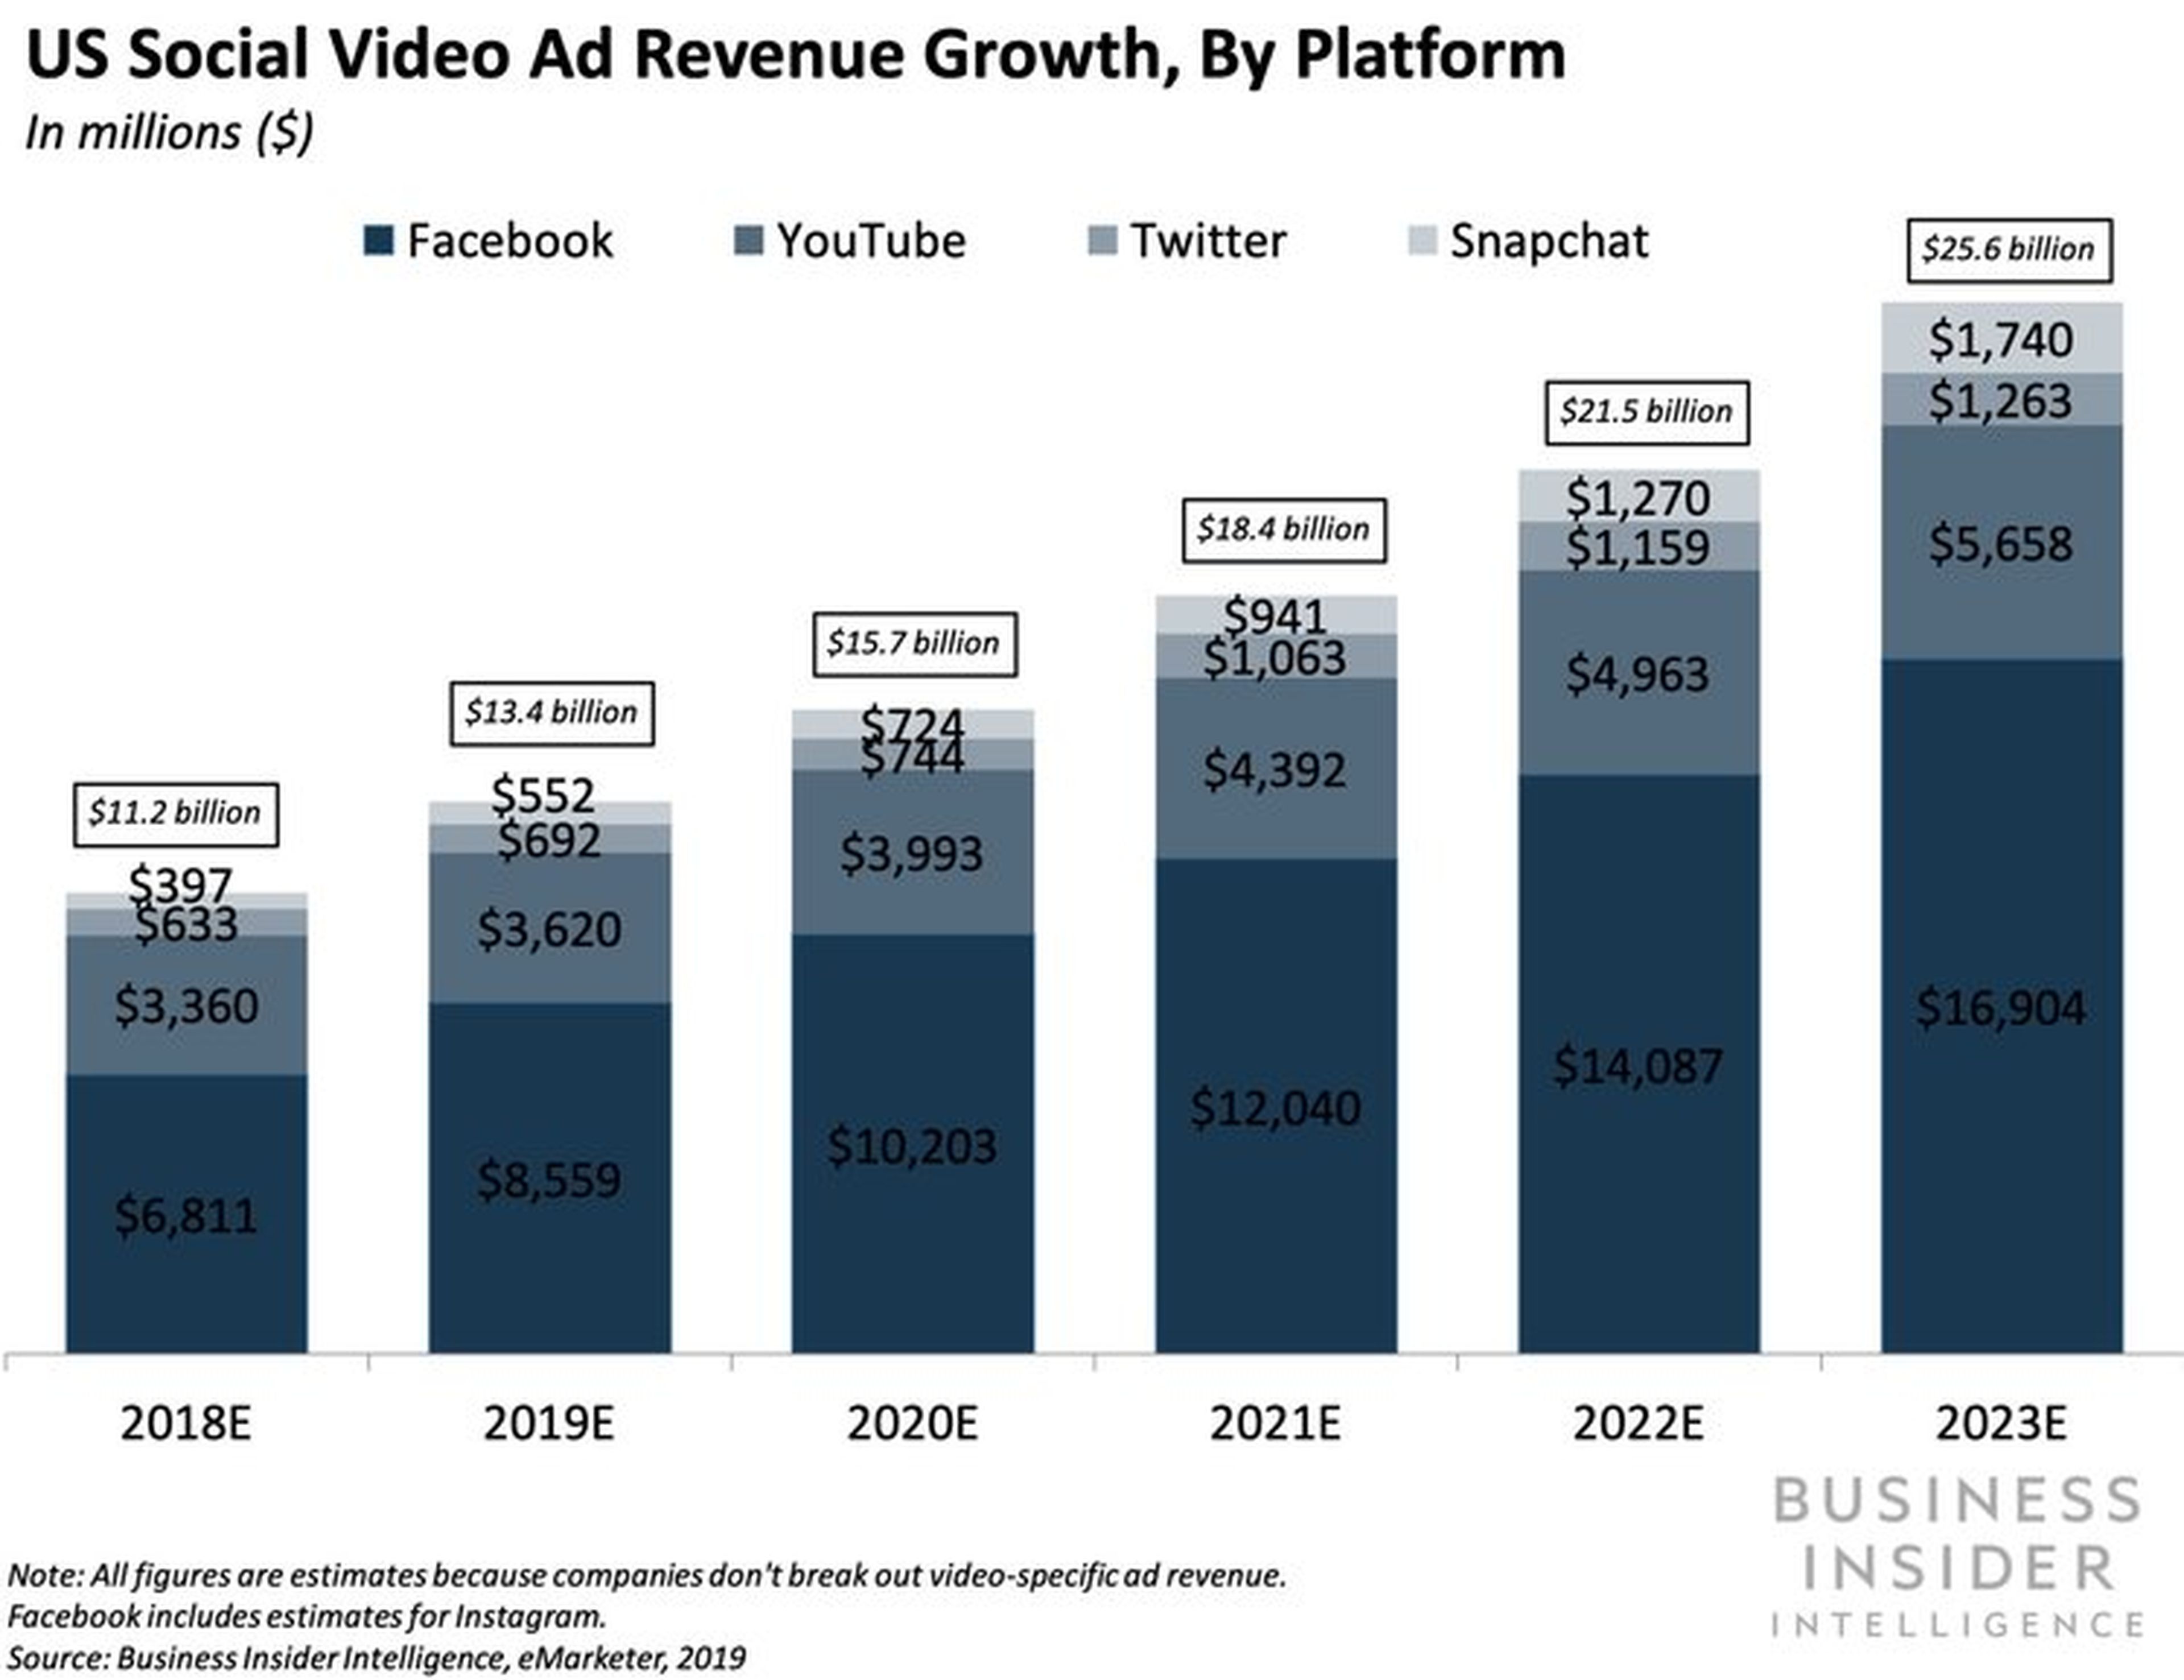 Crecimiento de los ingresos por publicidad en vídeo social en los EE.UU.